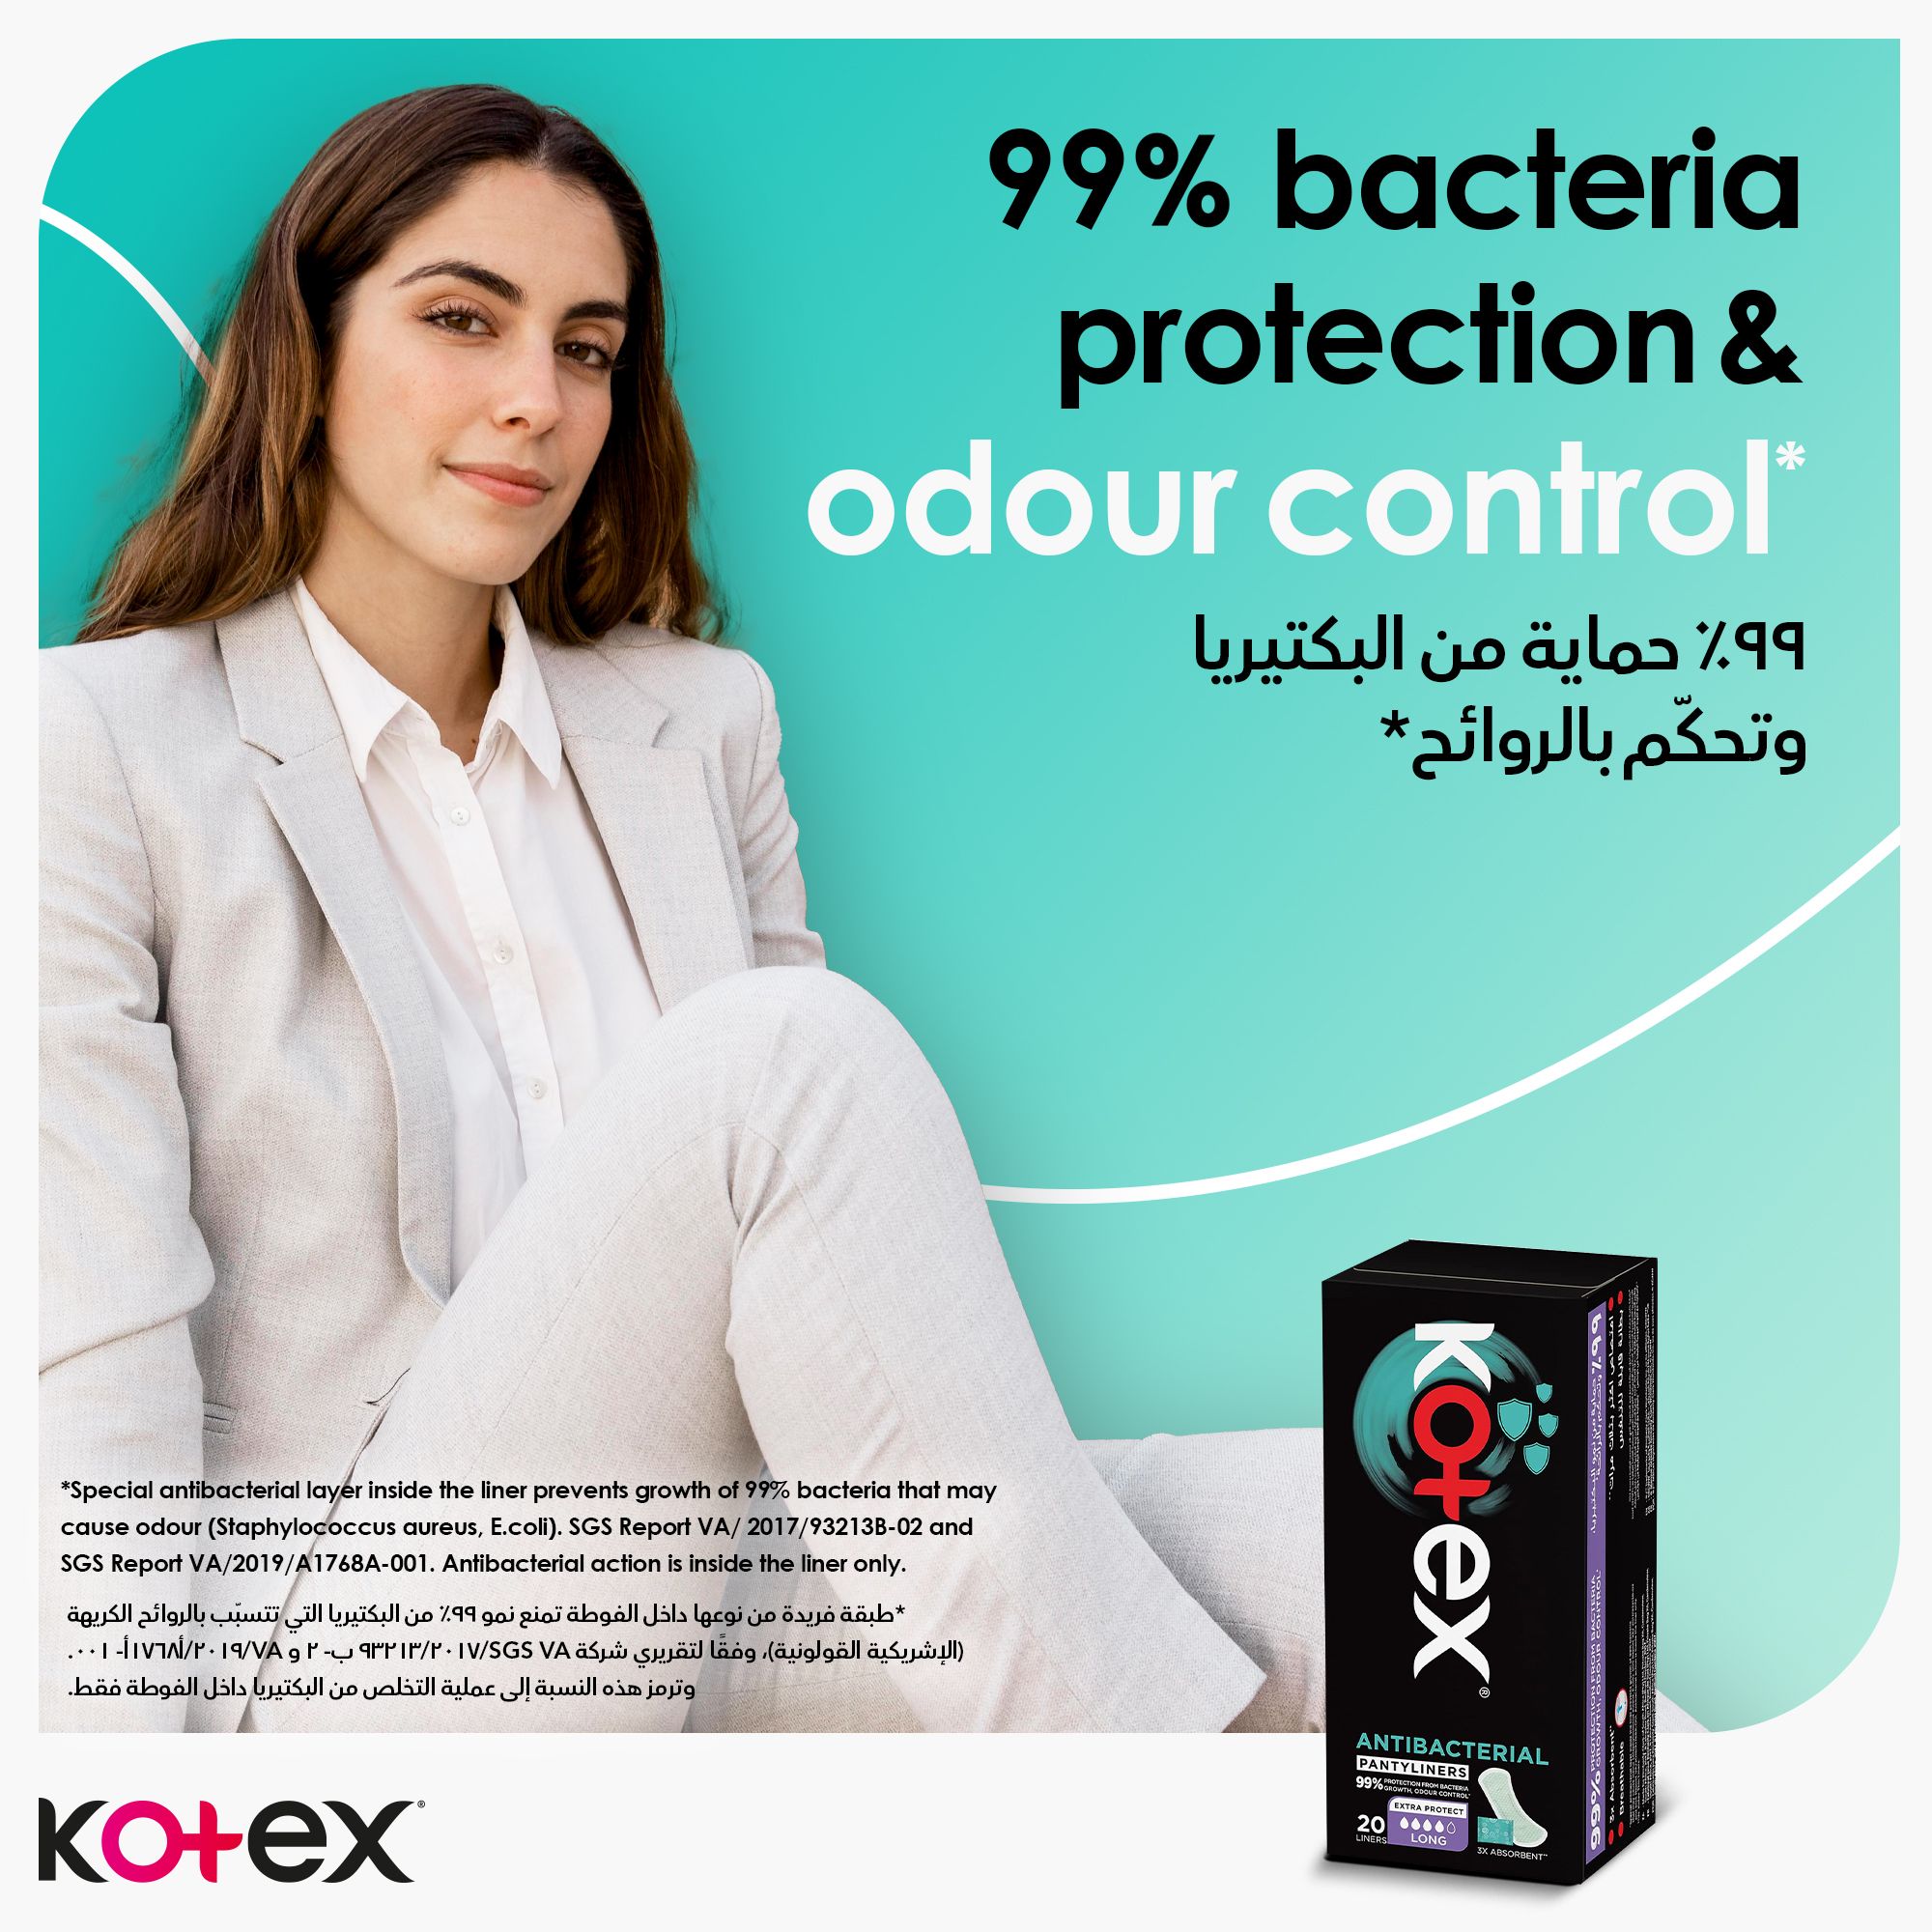 فوط كوتكس اليومية المضادة للبكتيريا، حماية من نمو البكتيريا بنسبة 99%، 44 فوطة صحية يومية